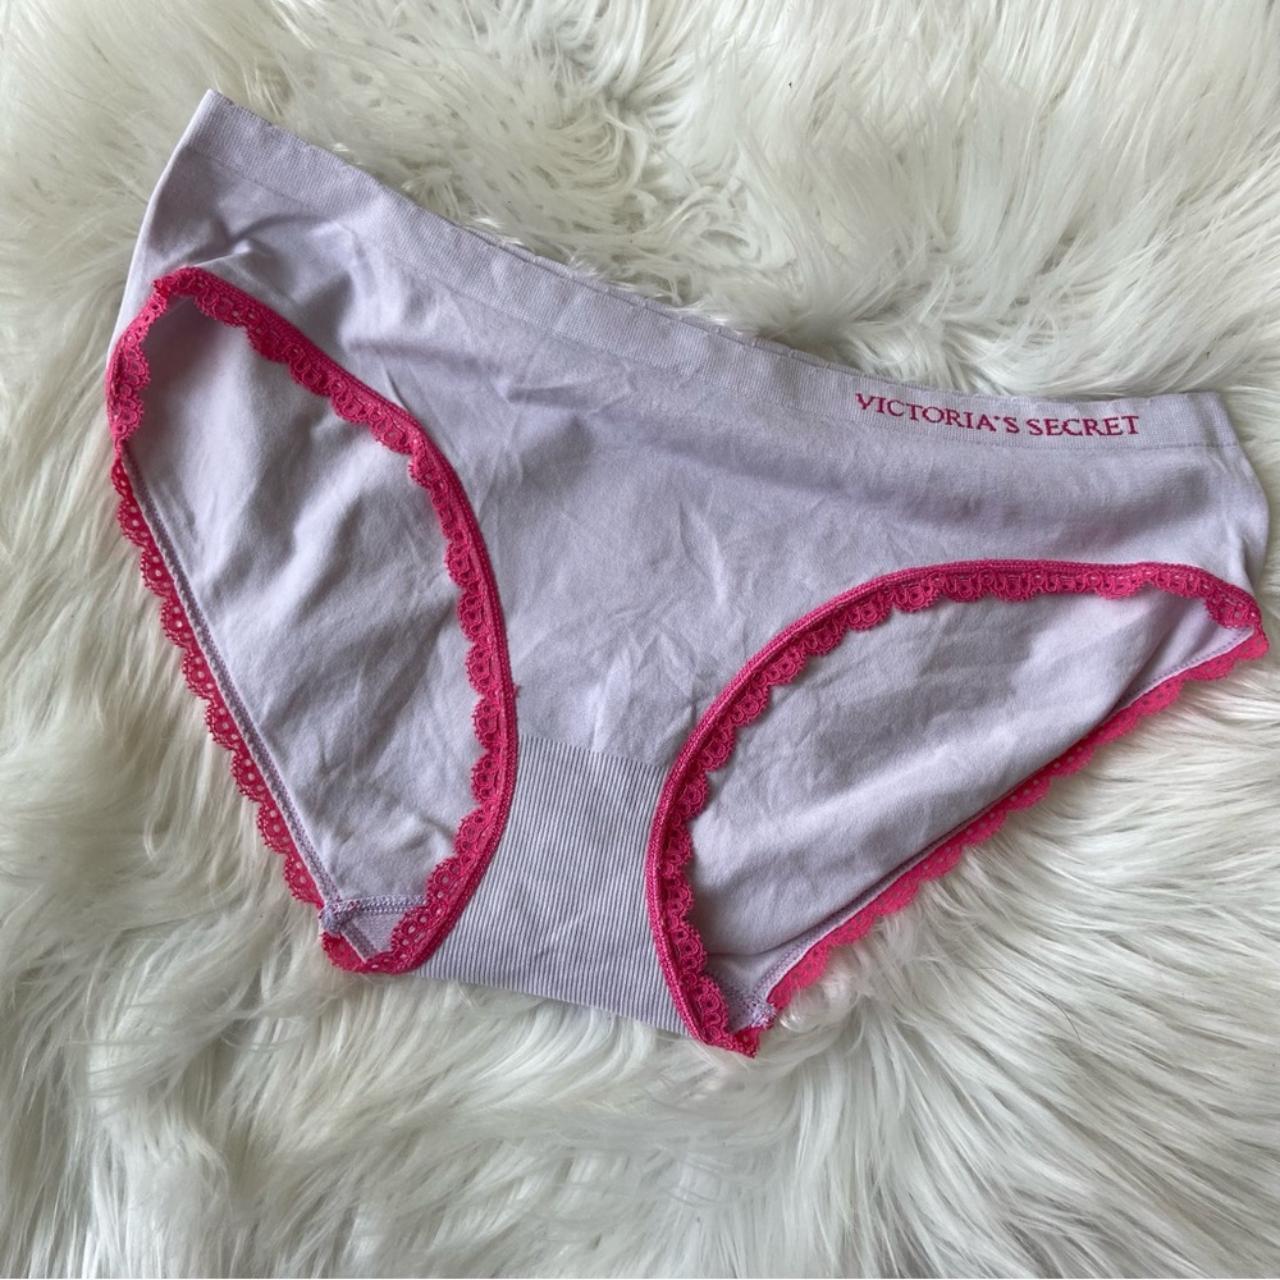 Vs Victorias Secret Pink Cotton Bikini Panty Underwear White